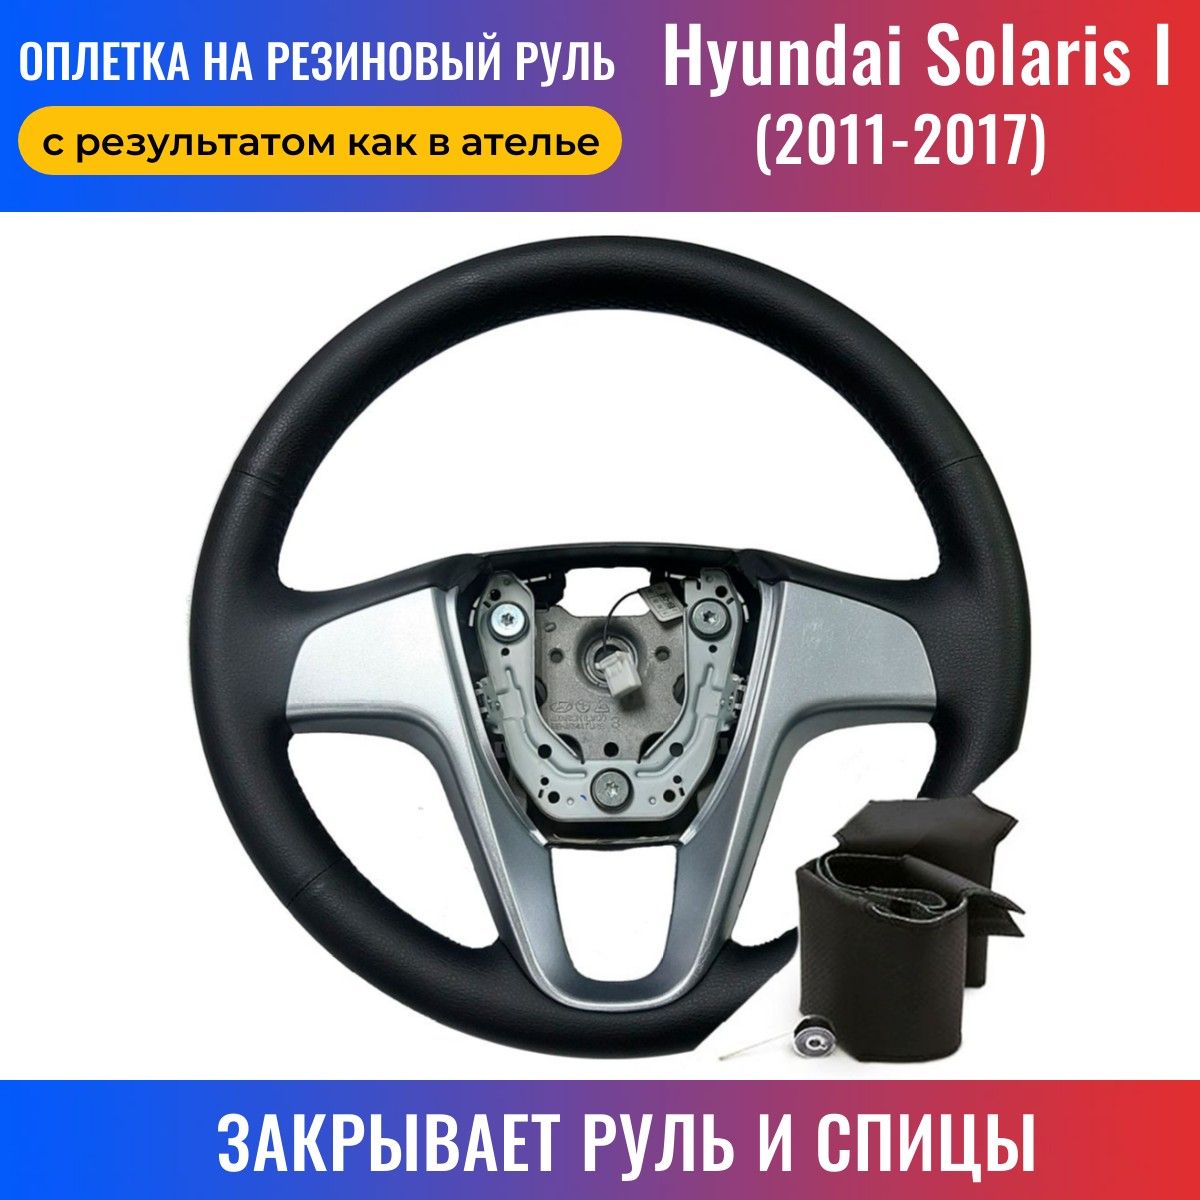 Купить Hyundai Elantra в Москве